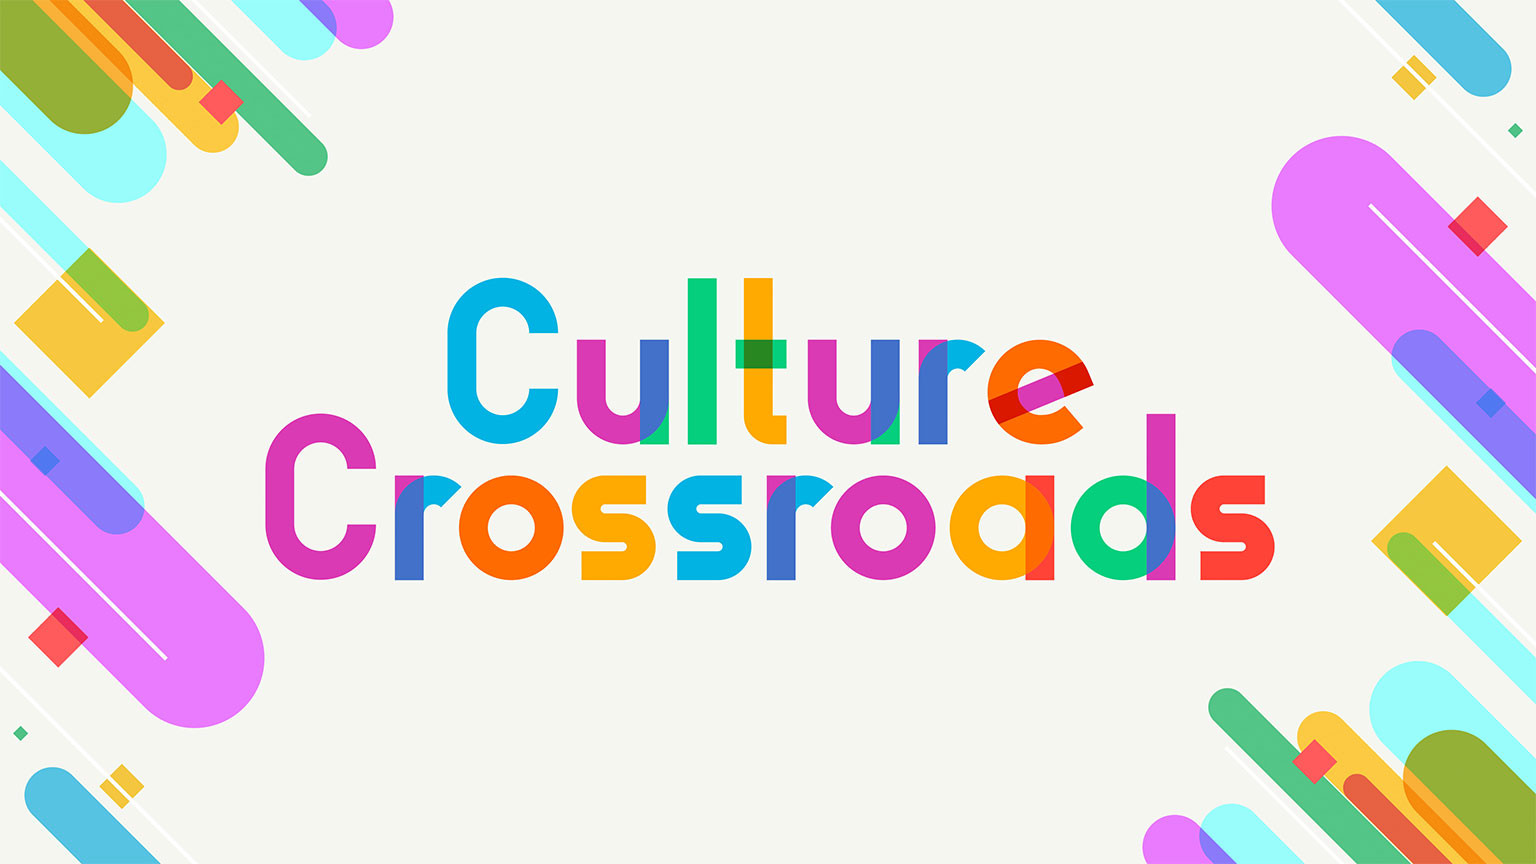 Cruce cultural
Culture Crossroads